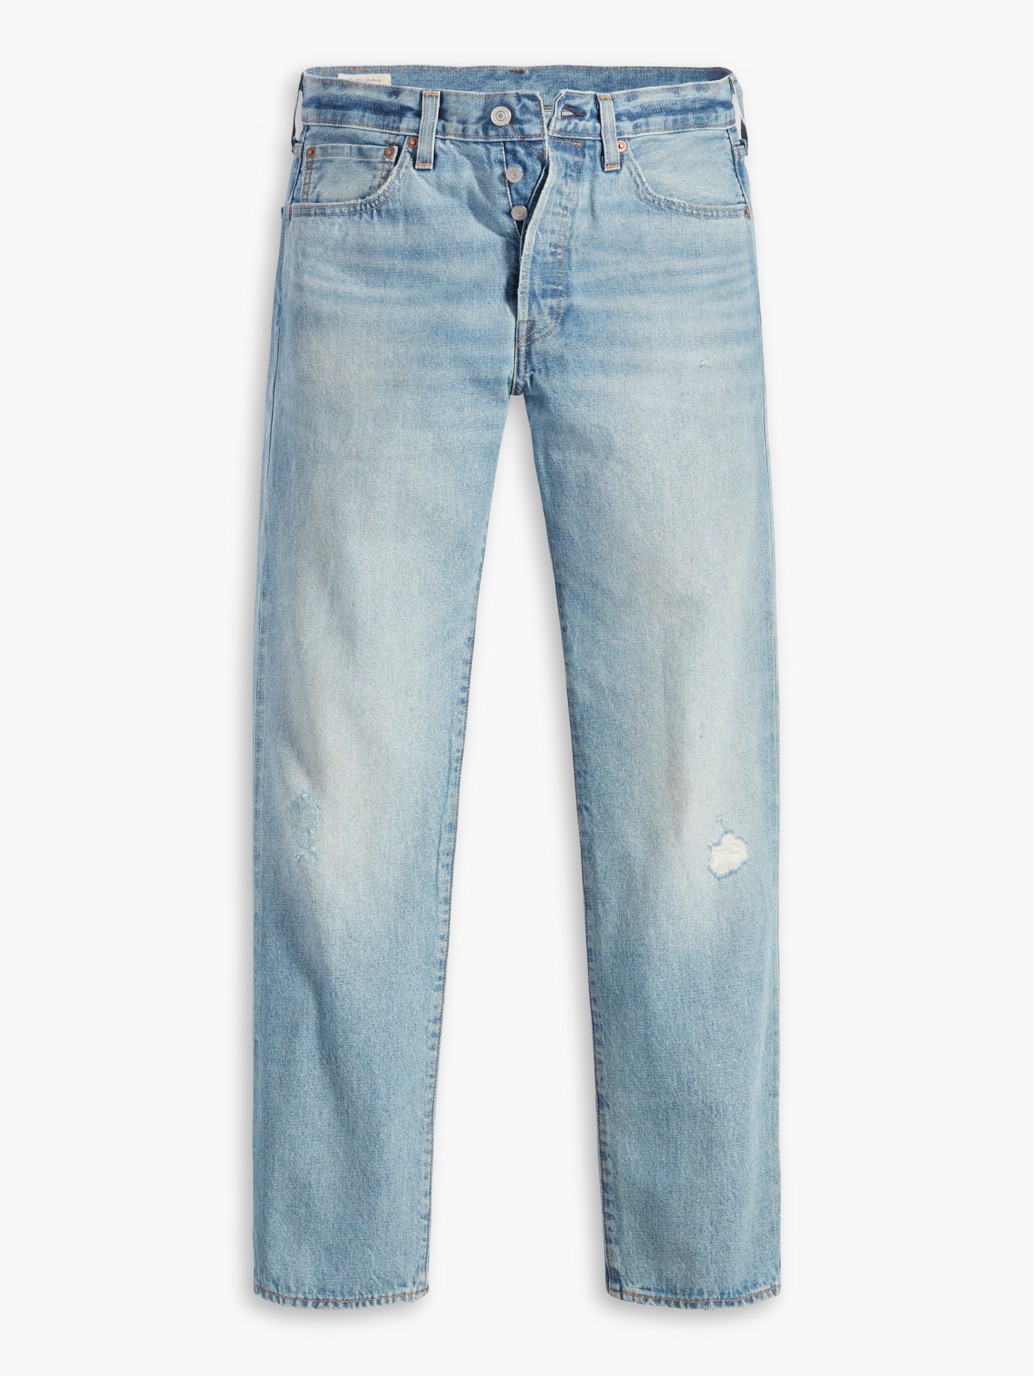 Buy Levi's® Men's 501® Original Transitional Cotton Jeans| Levi's 